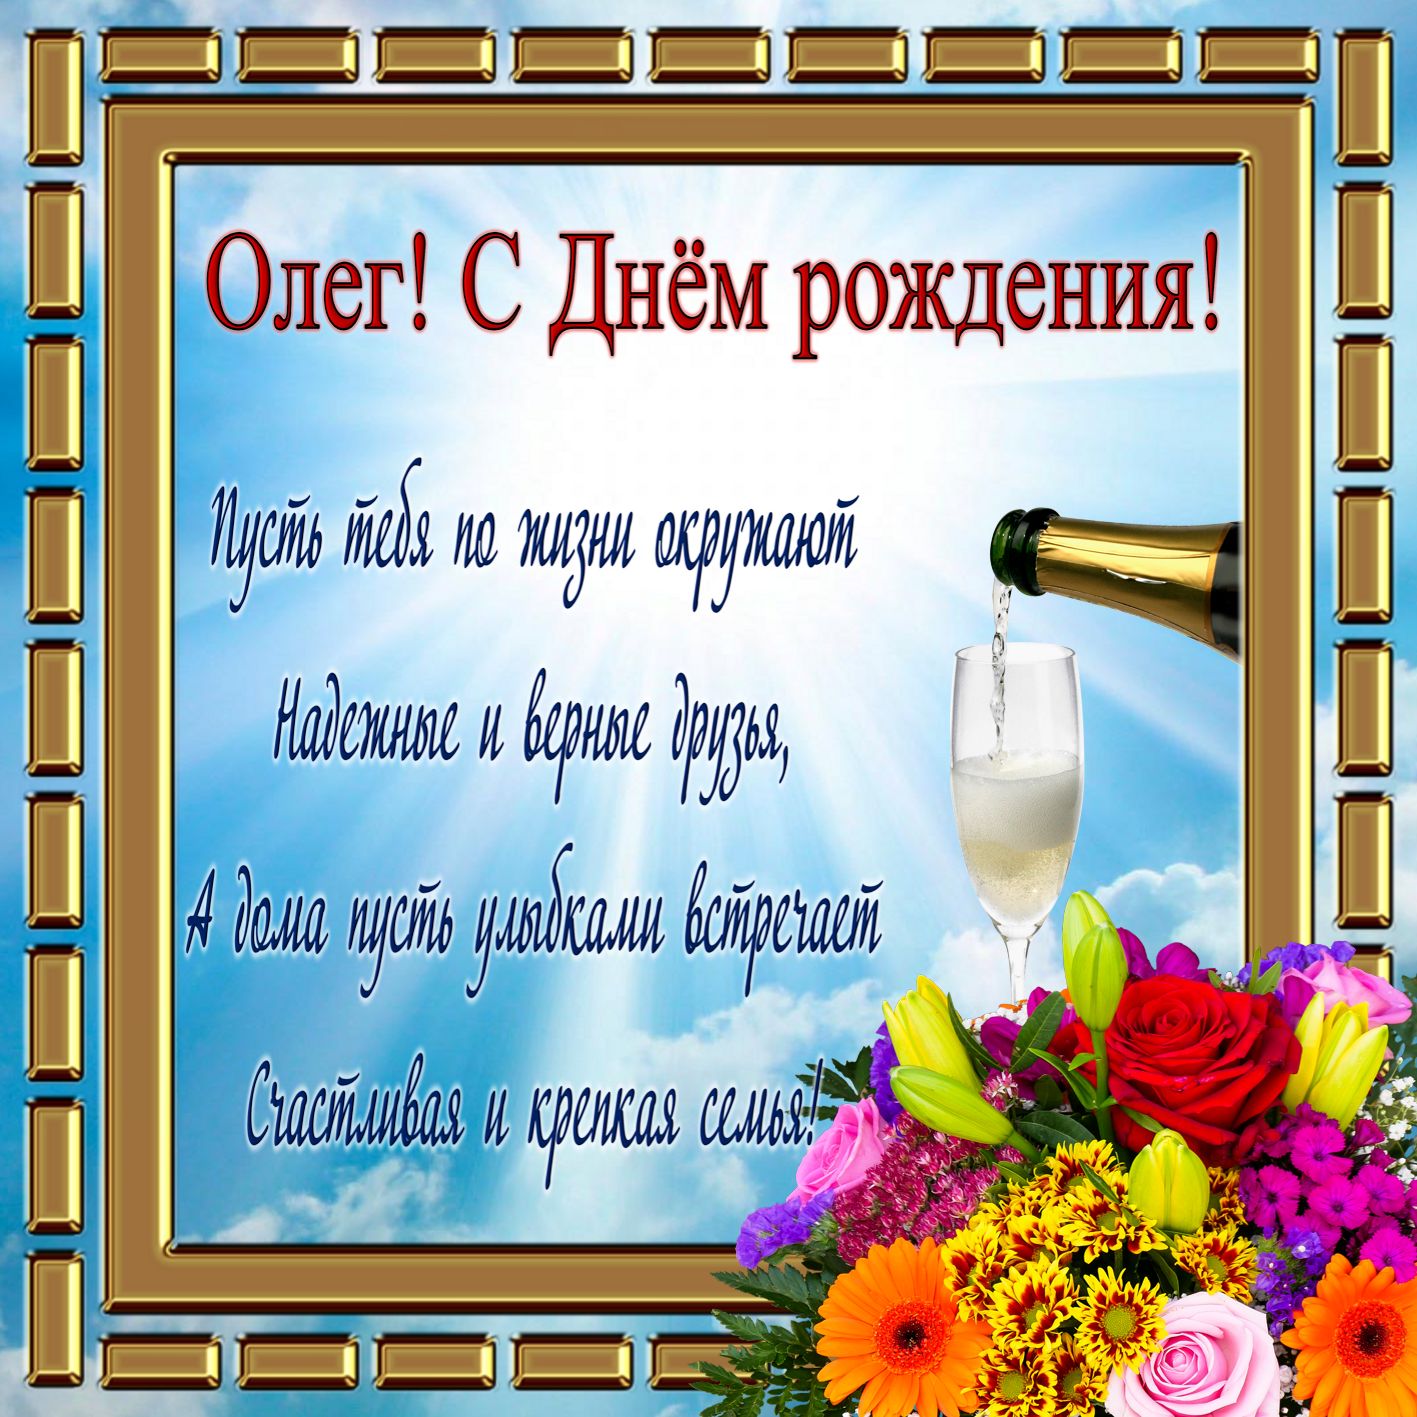 Смешные Поздравления С Днем Рождения Олегу